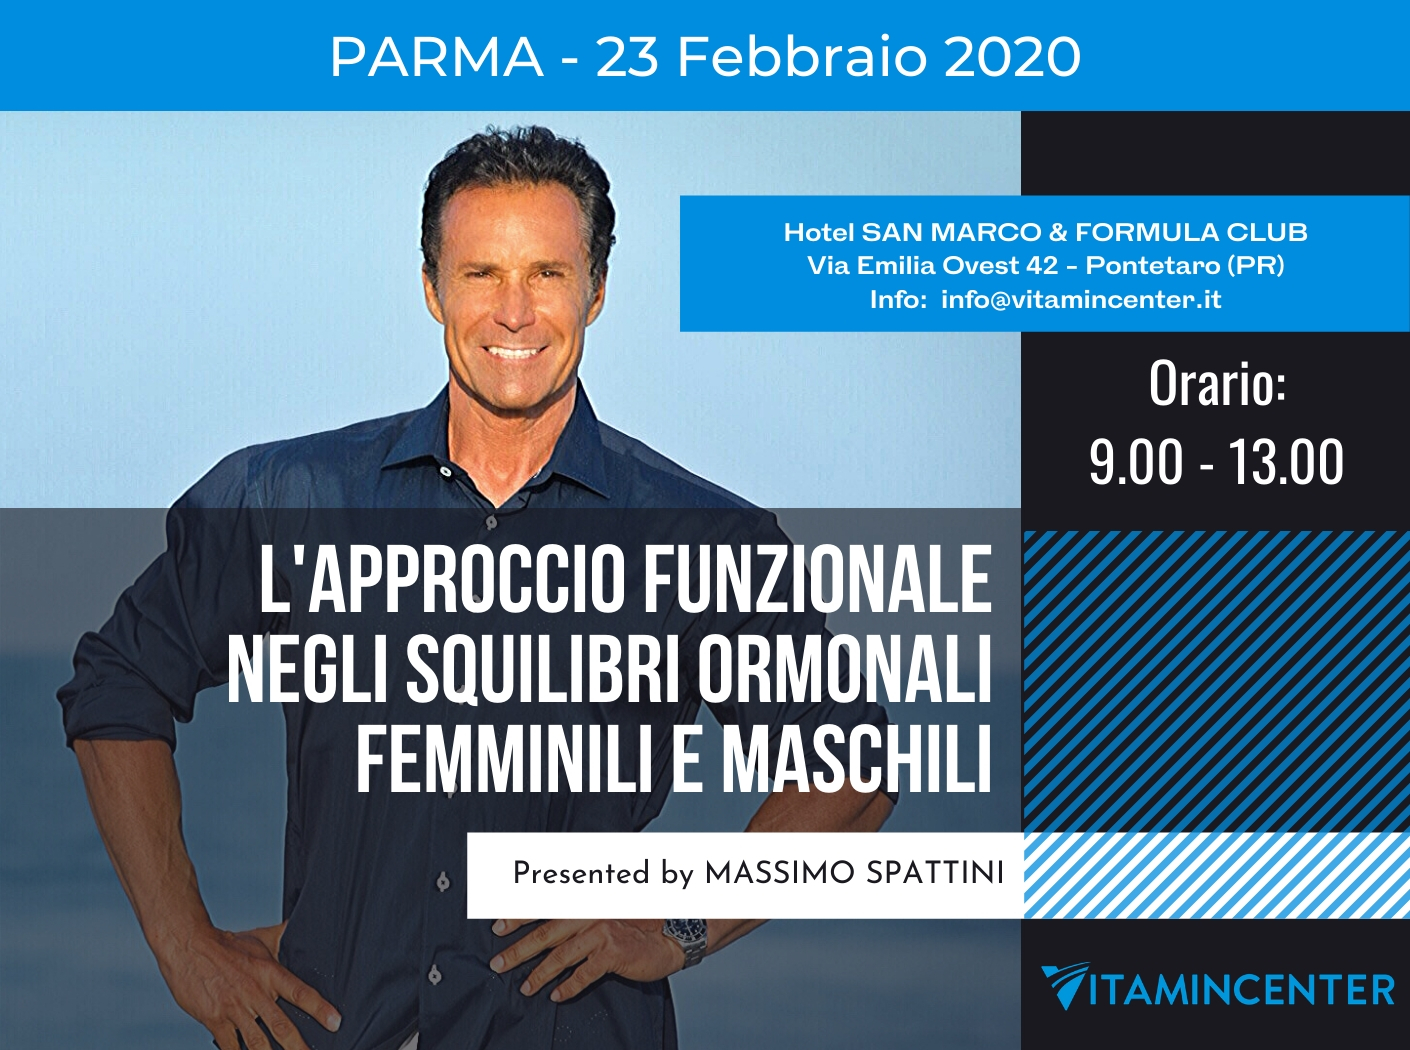 SQUILIBRI ORMONALI MASCHILI E FEMMINILI: L’APPROCCIO FUNZIONALE – Parma – 23 Febbraio 2020